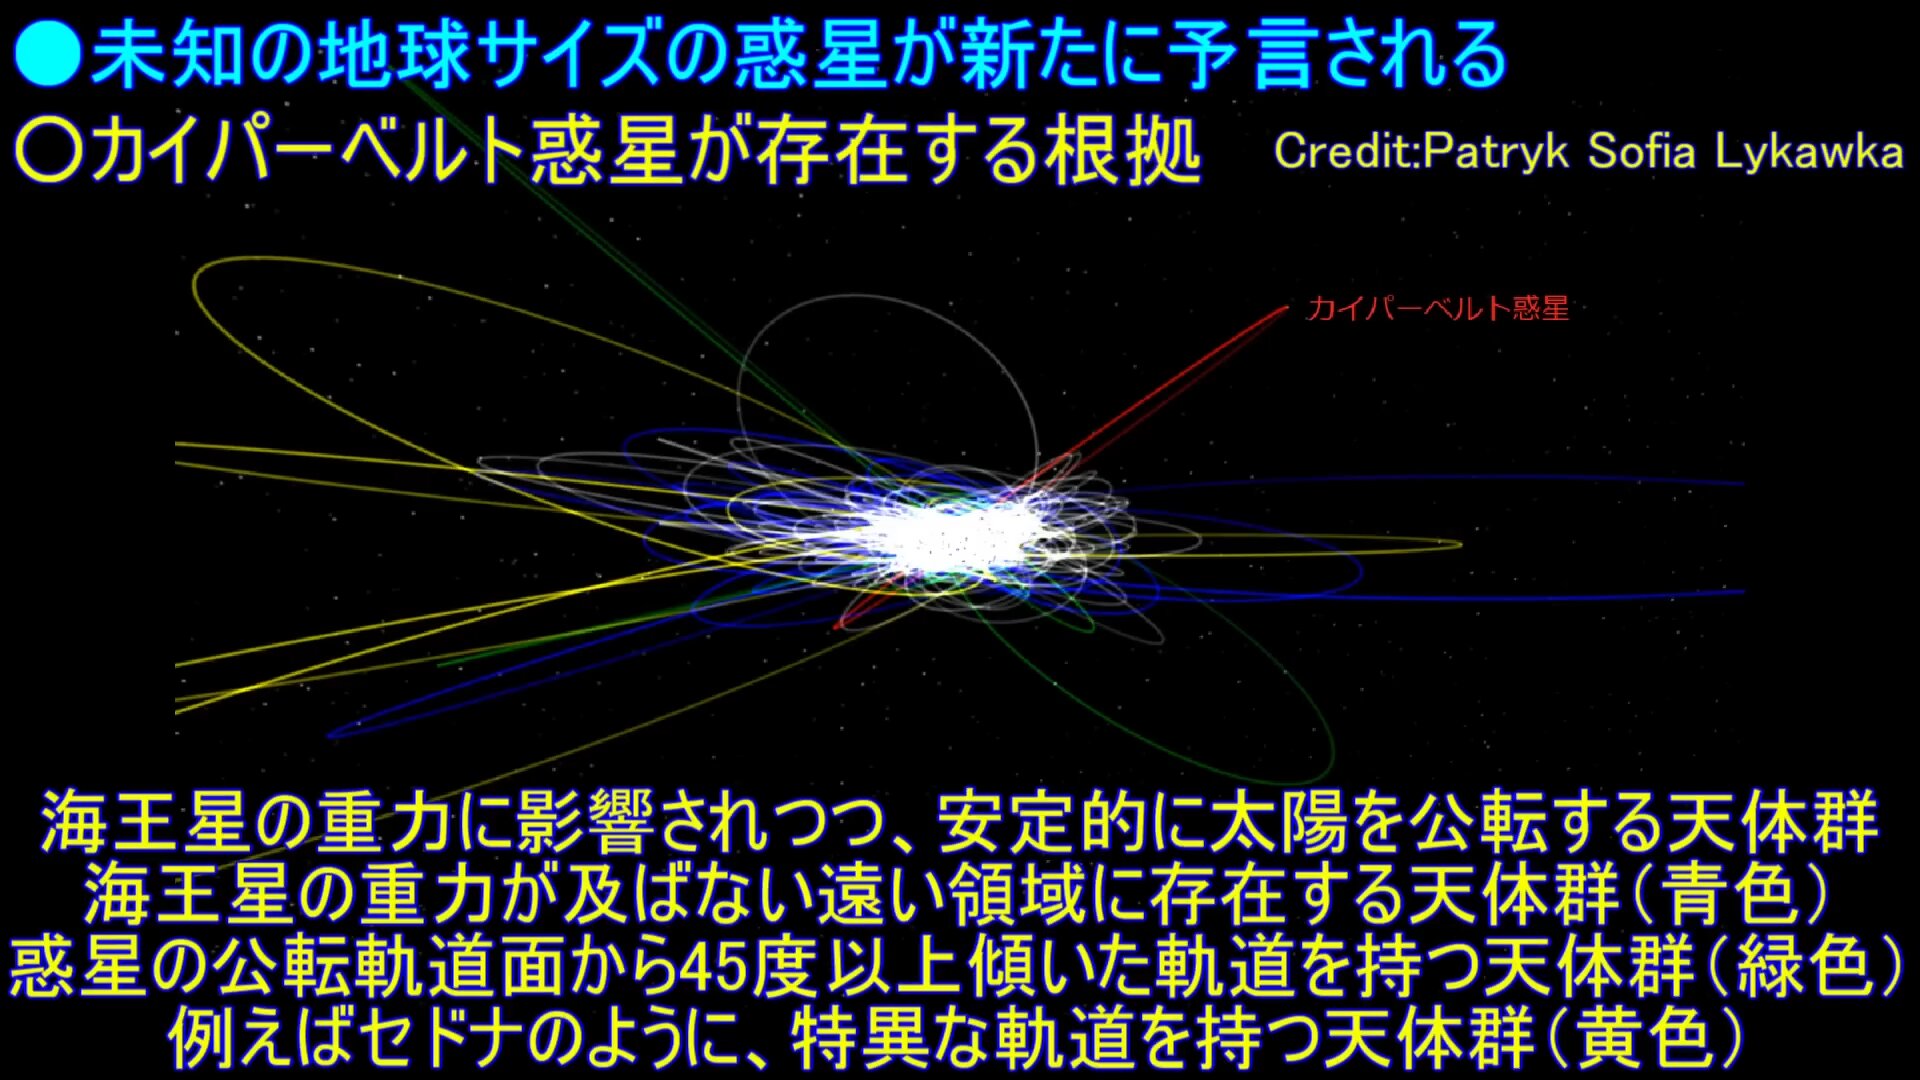 海王星の重力に影響されつつ、安定的に太陽を公転する天体群海王星の重力が及ばない遠い領域に存在する天体群（青色）惑星の公転軌道面から45度以上傾いた軌道を持つ天体群（緑色）